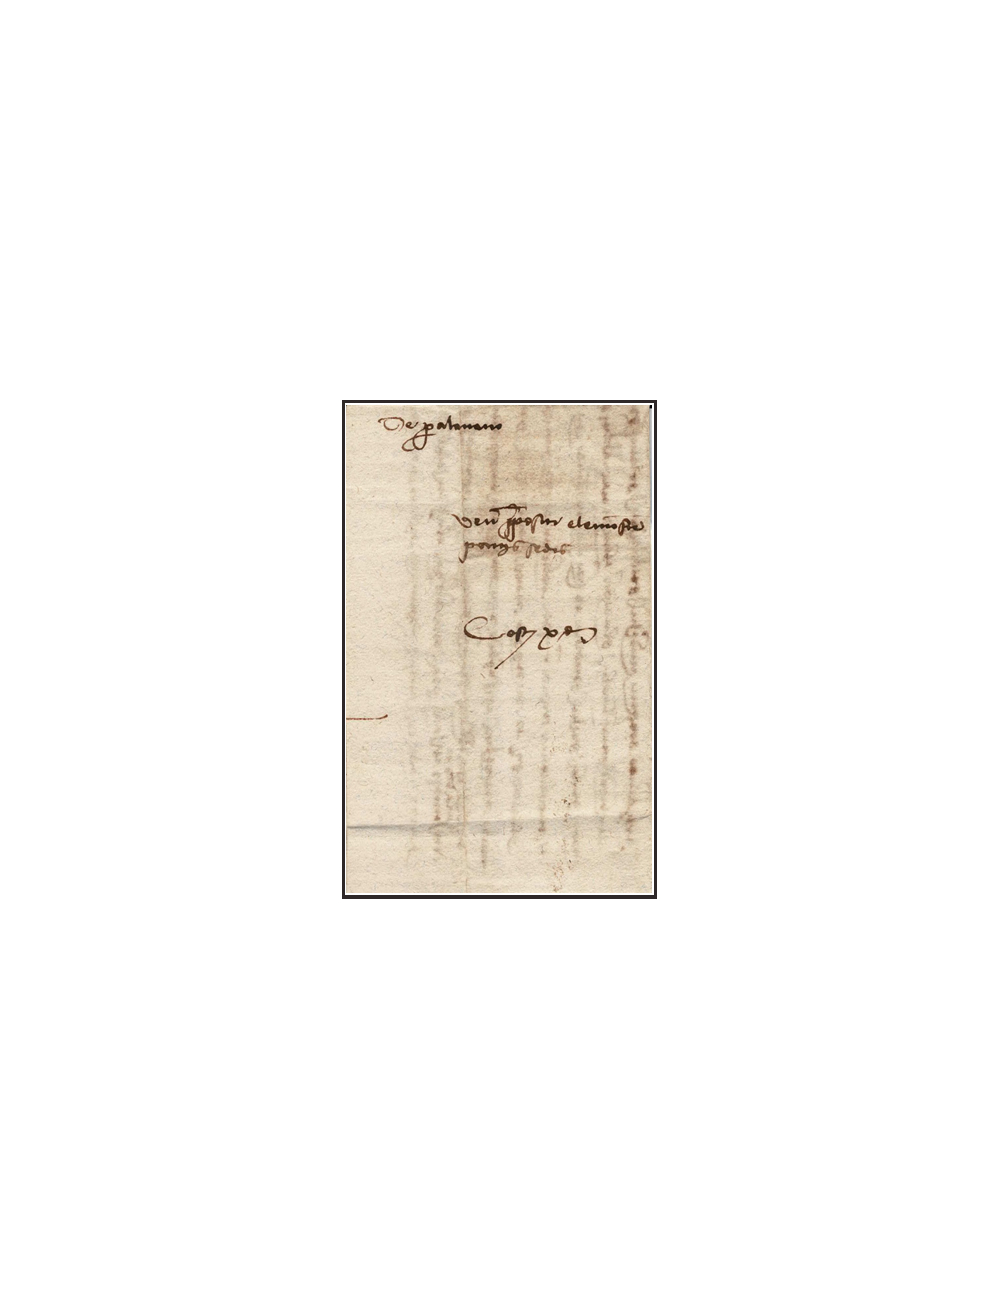 1478 (11 DIC) Girona Correo interior. Carta del canónigo de la catedral de Girona …